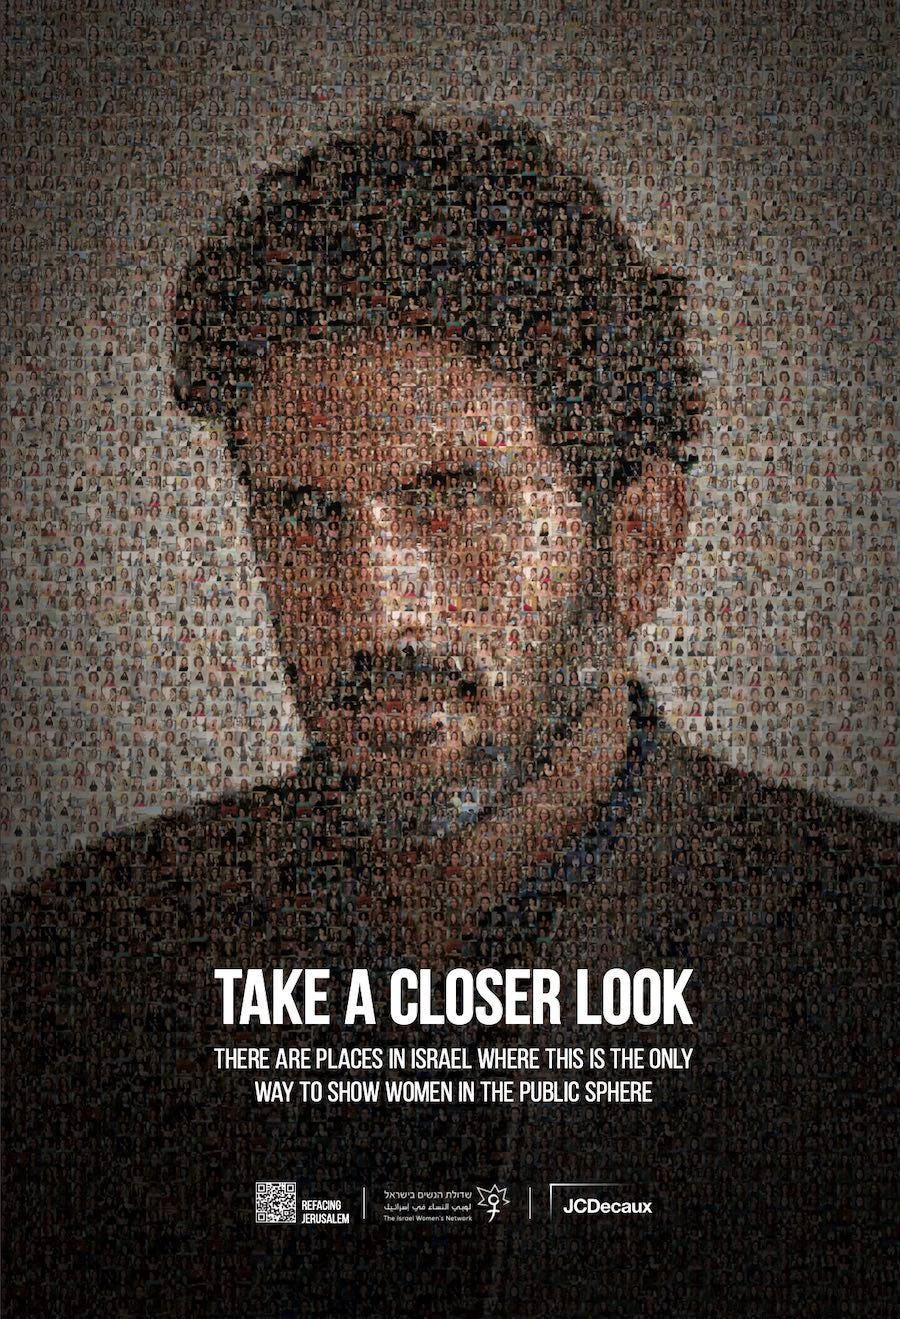 Immagine della campagna "Take a closer look", in cui il volto dell’attore Tsahi Halevi è un mosaico composto dalle immagini che sono state deturpate, in quanto mostravano figure femminili.